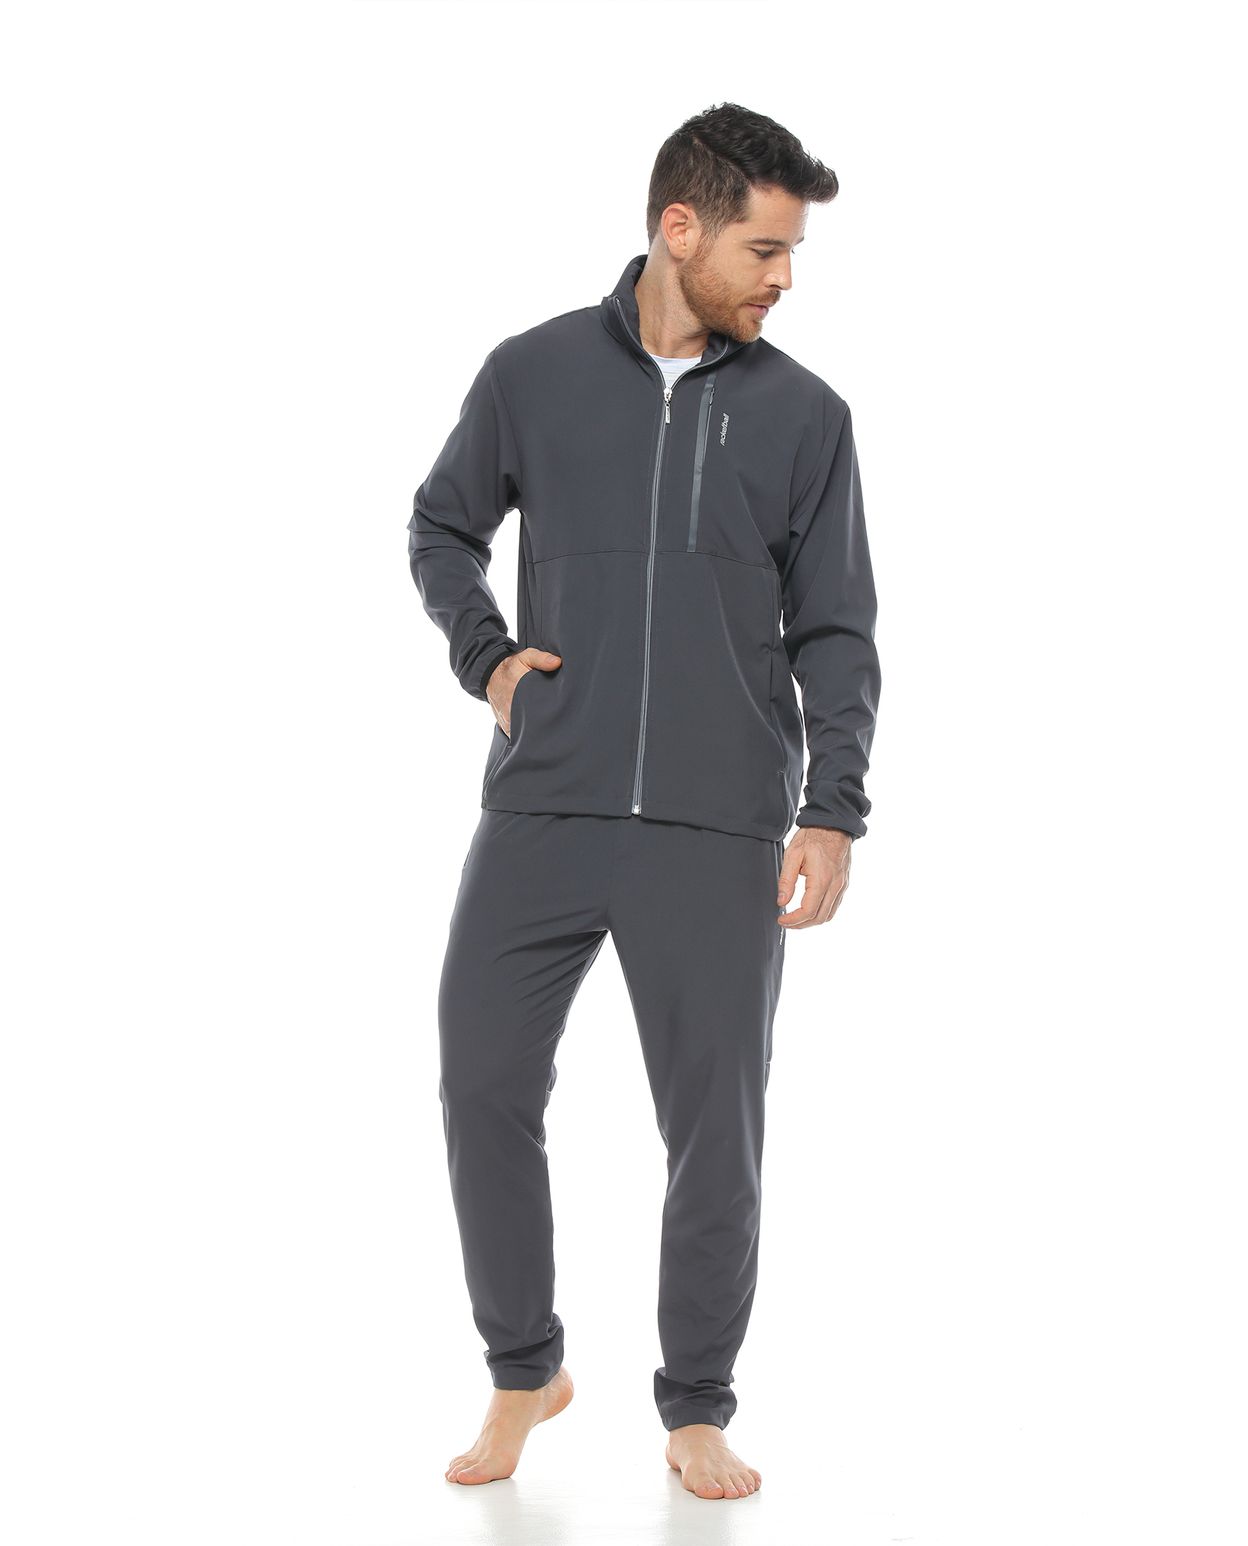 Modelo con pantalon deportivo color gris oscuro para hombre y chaqueta color gris oscuro parte frontal